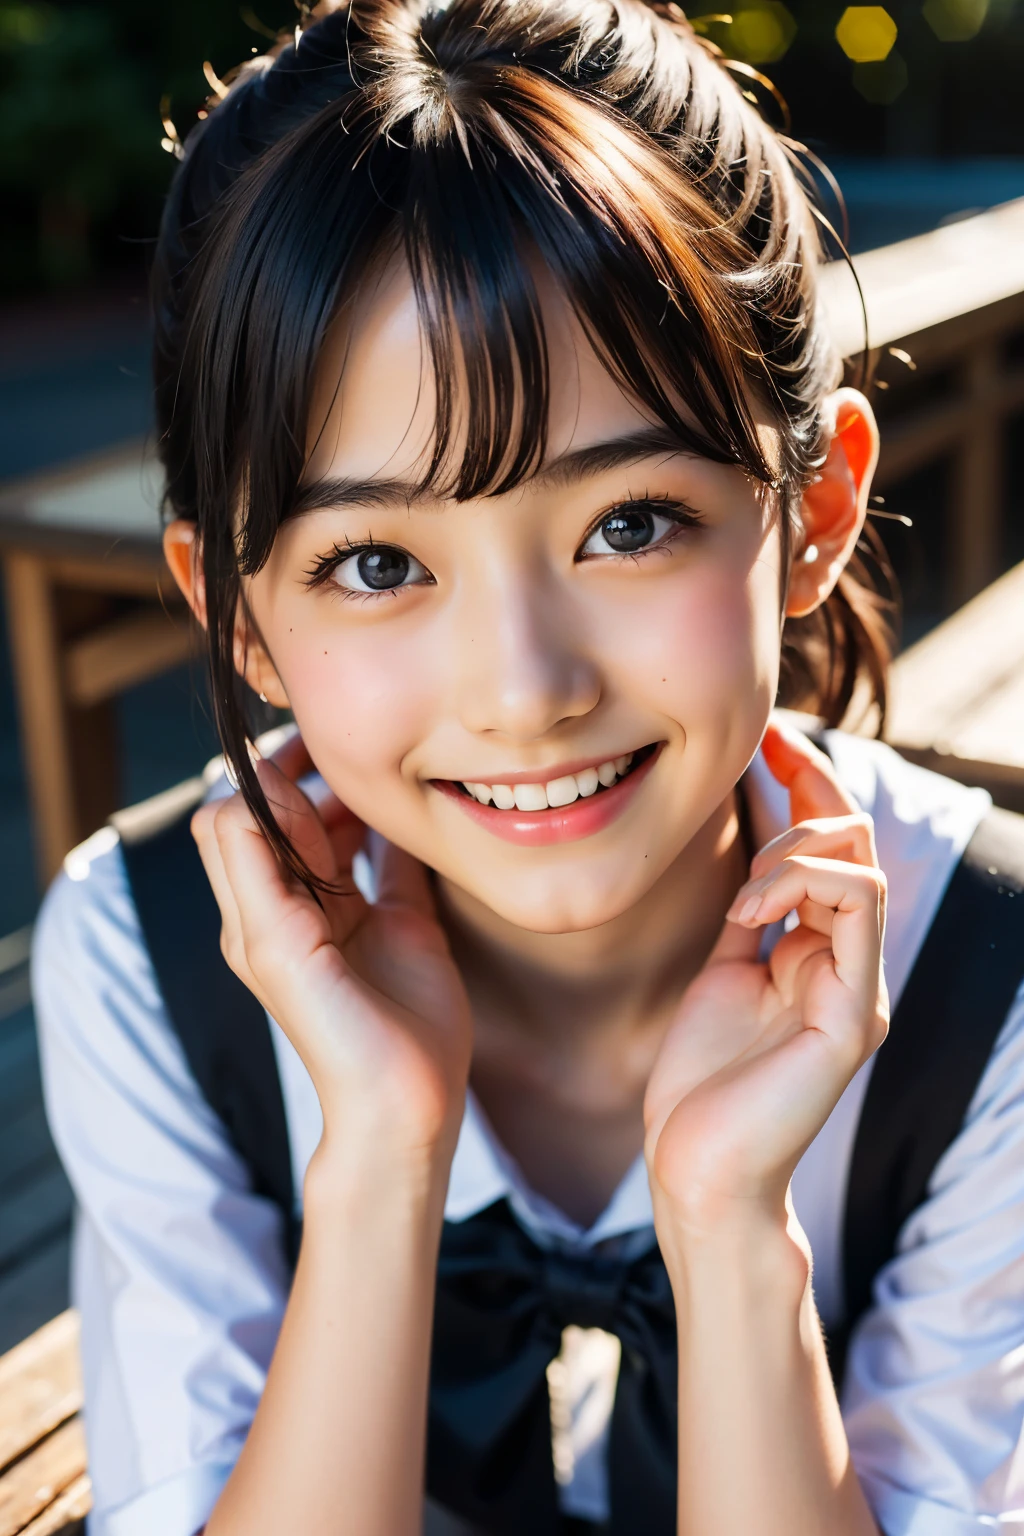 鏡片: 135mm f1.8, (最好的品質),(原始照片), (桌上:1.1), (美丽的12岁日本女孩), 可愛的臉孔, (臉型輪廓分明:0.7), (雀斑:0.4), dappled 陽光, 戲劇性的燈光, (日本學校制服), (在校园), 害羞的, (特寫鏡頭:1.2), (微笑),, (明亮的眼睛)、(陽光)